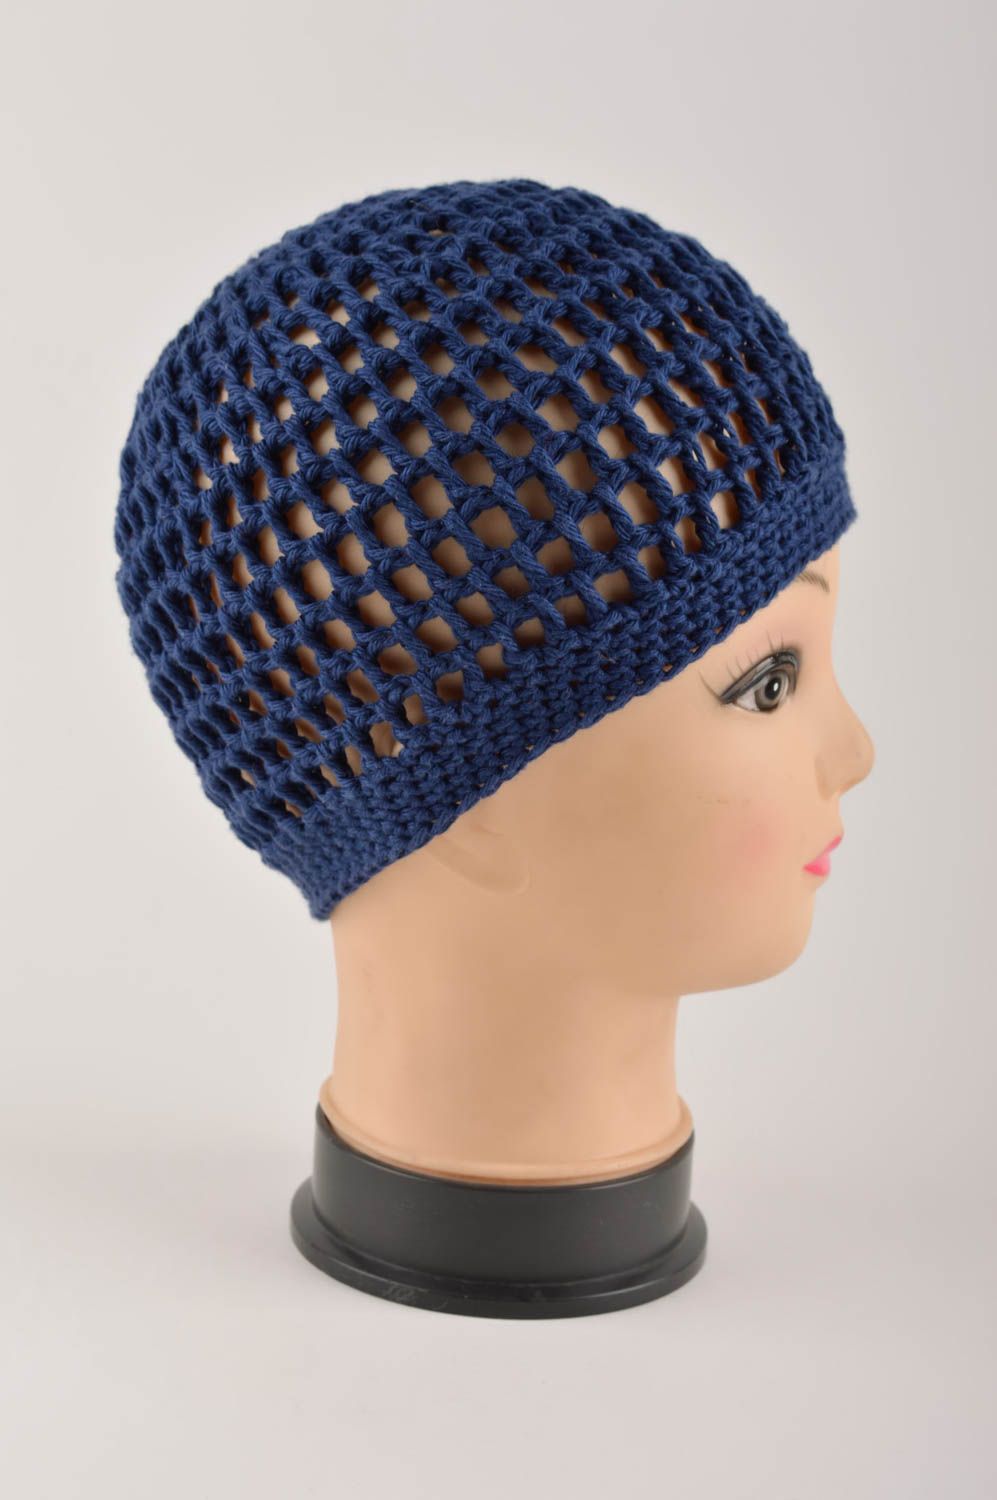 Вязаная шапка ручной работы женская шапка синяя красивая ажурная шапка с цветами фото 4